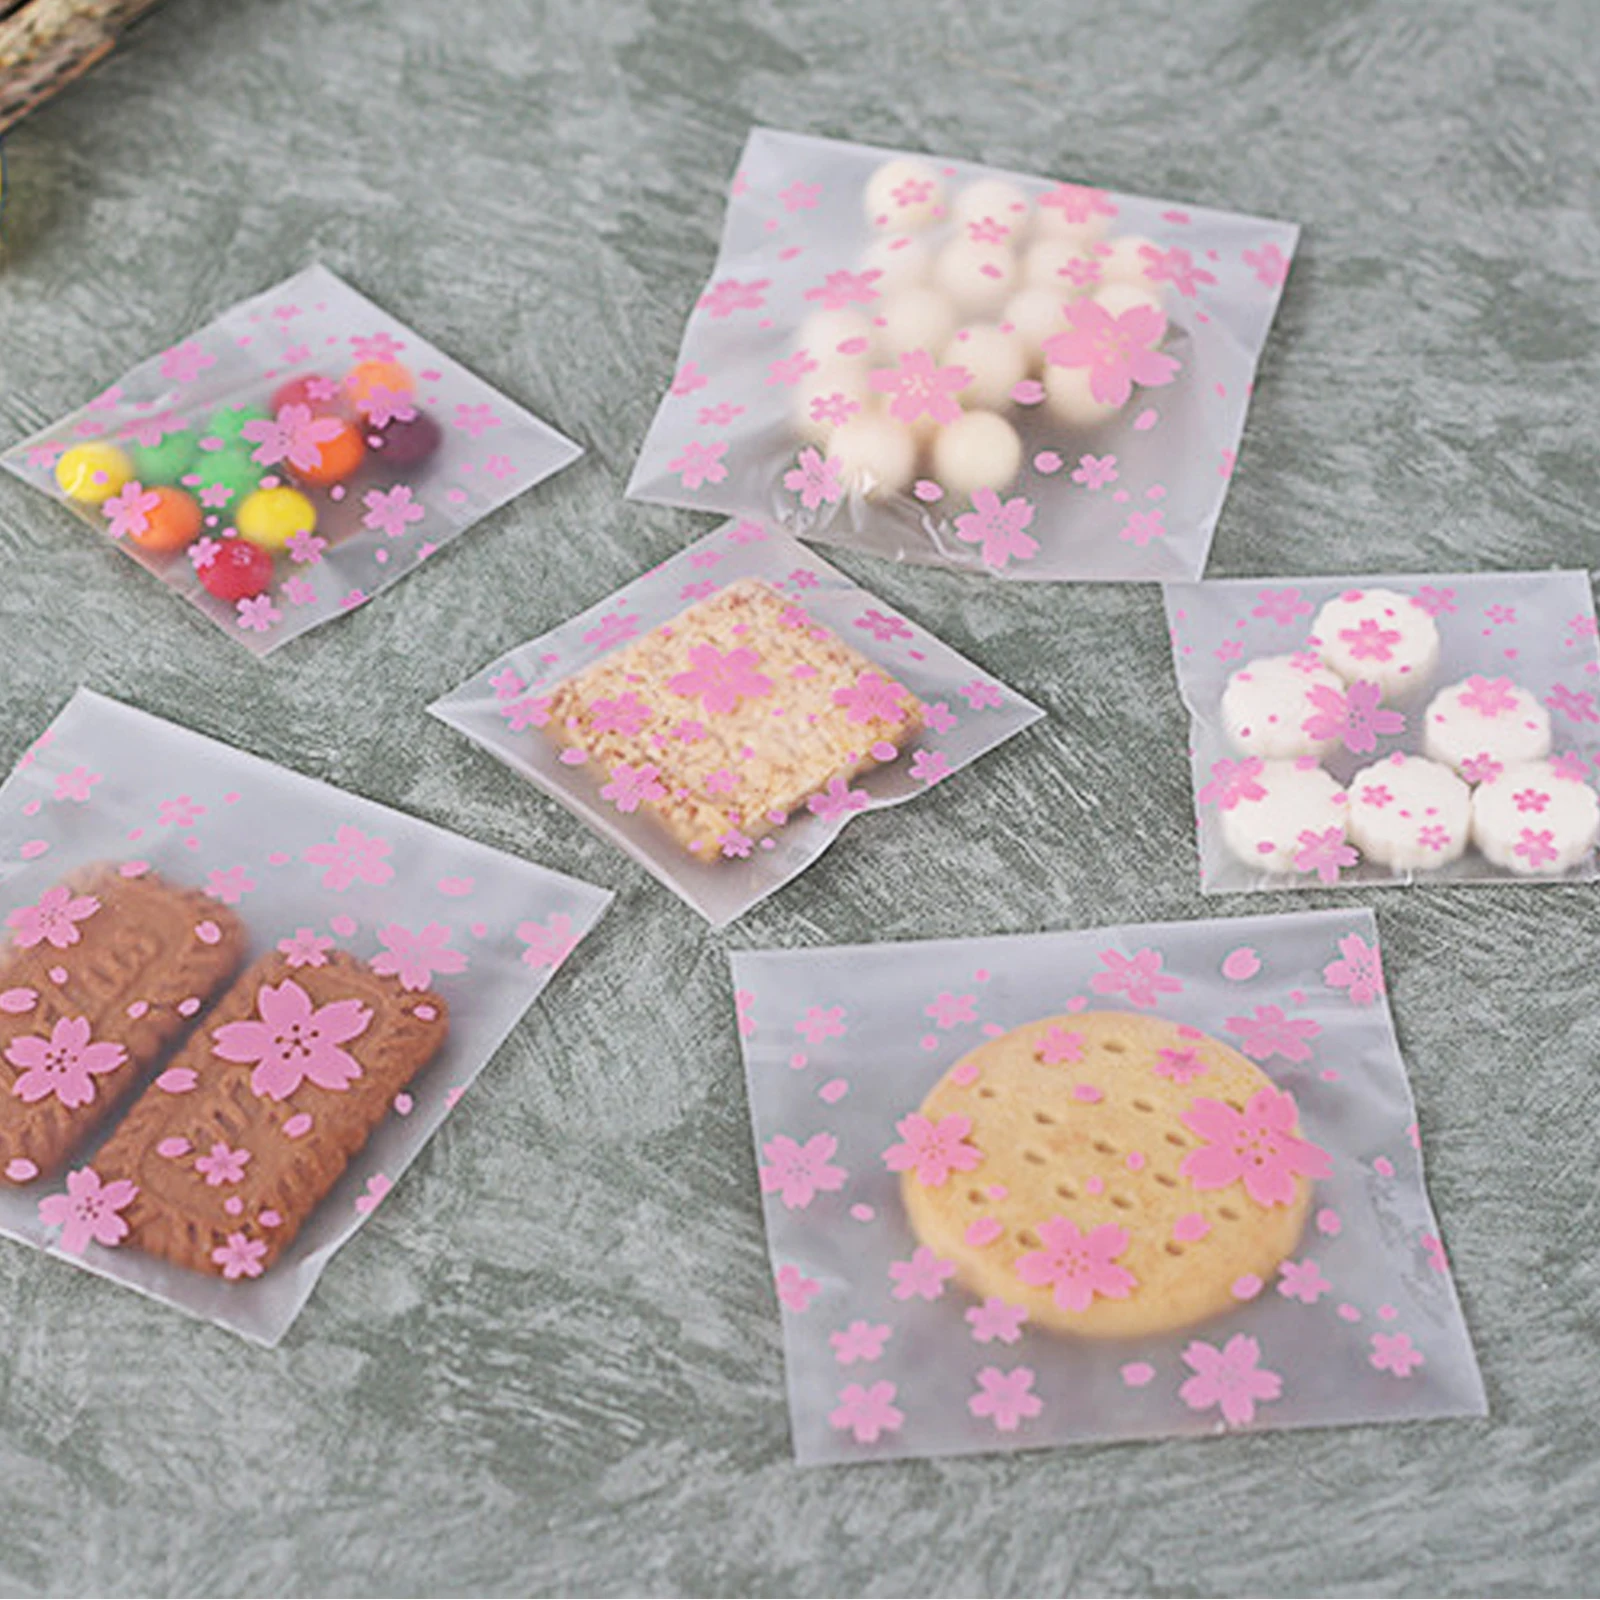 100 шт./лот 4 размера милые розовые вишни печенья и торт выпечки мешок самоклеющиеся пластиковые пакеты для печенья и закусок выпечки посылка